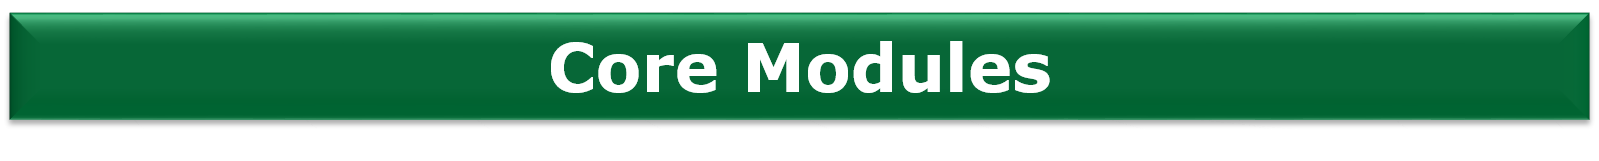 Focus Modules